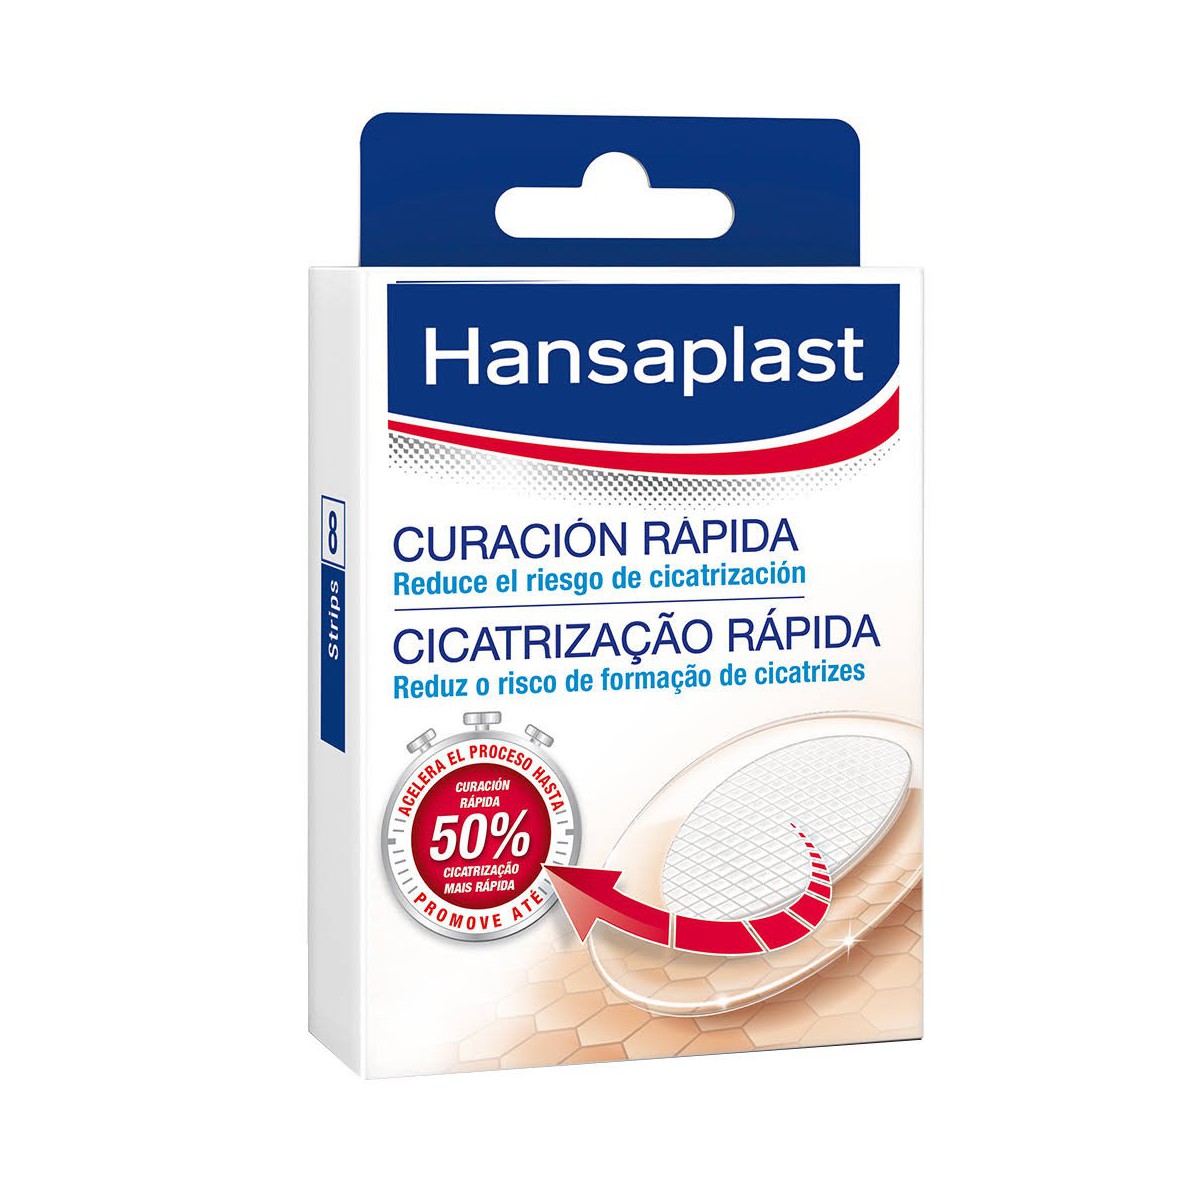 Hansaplast curación rápida 8 Strips